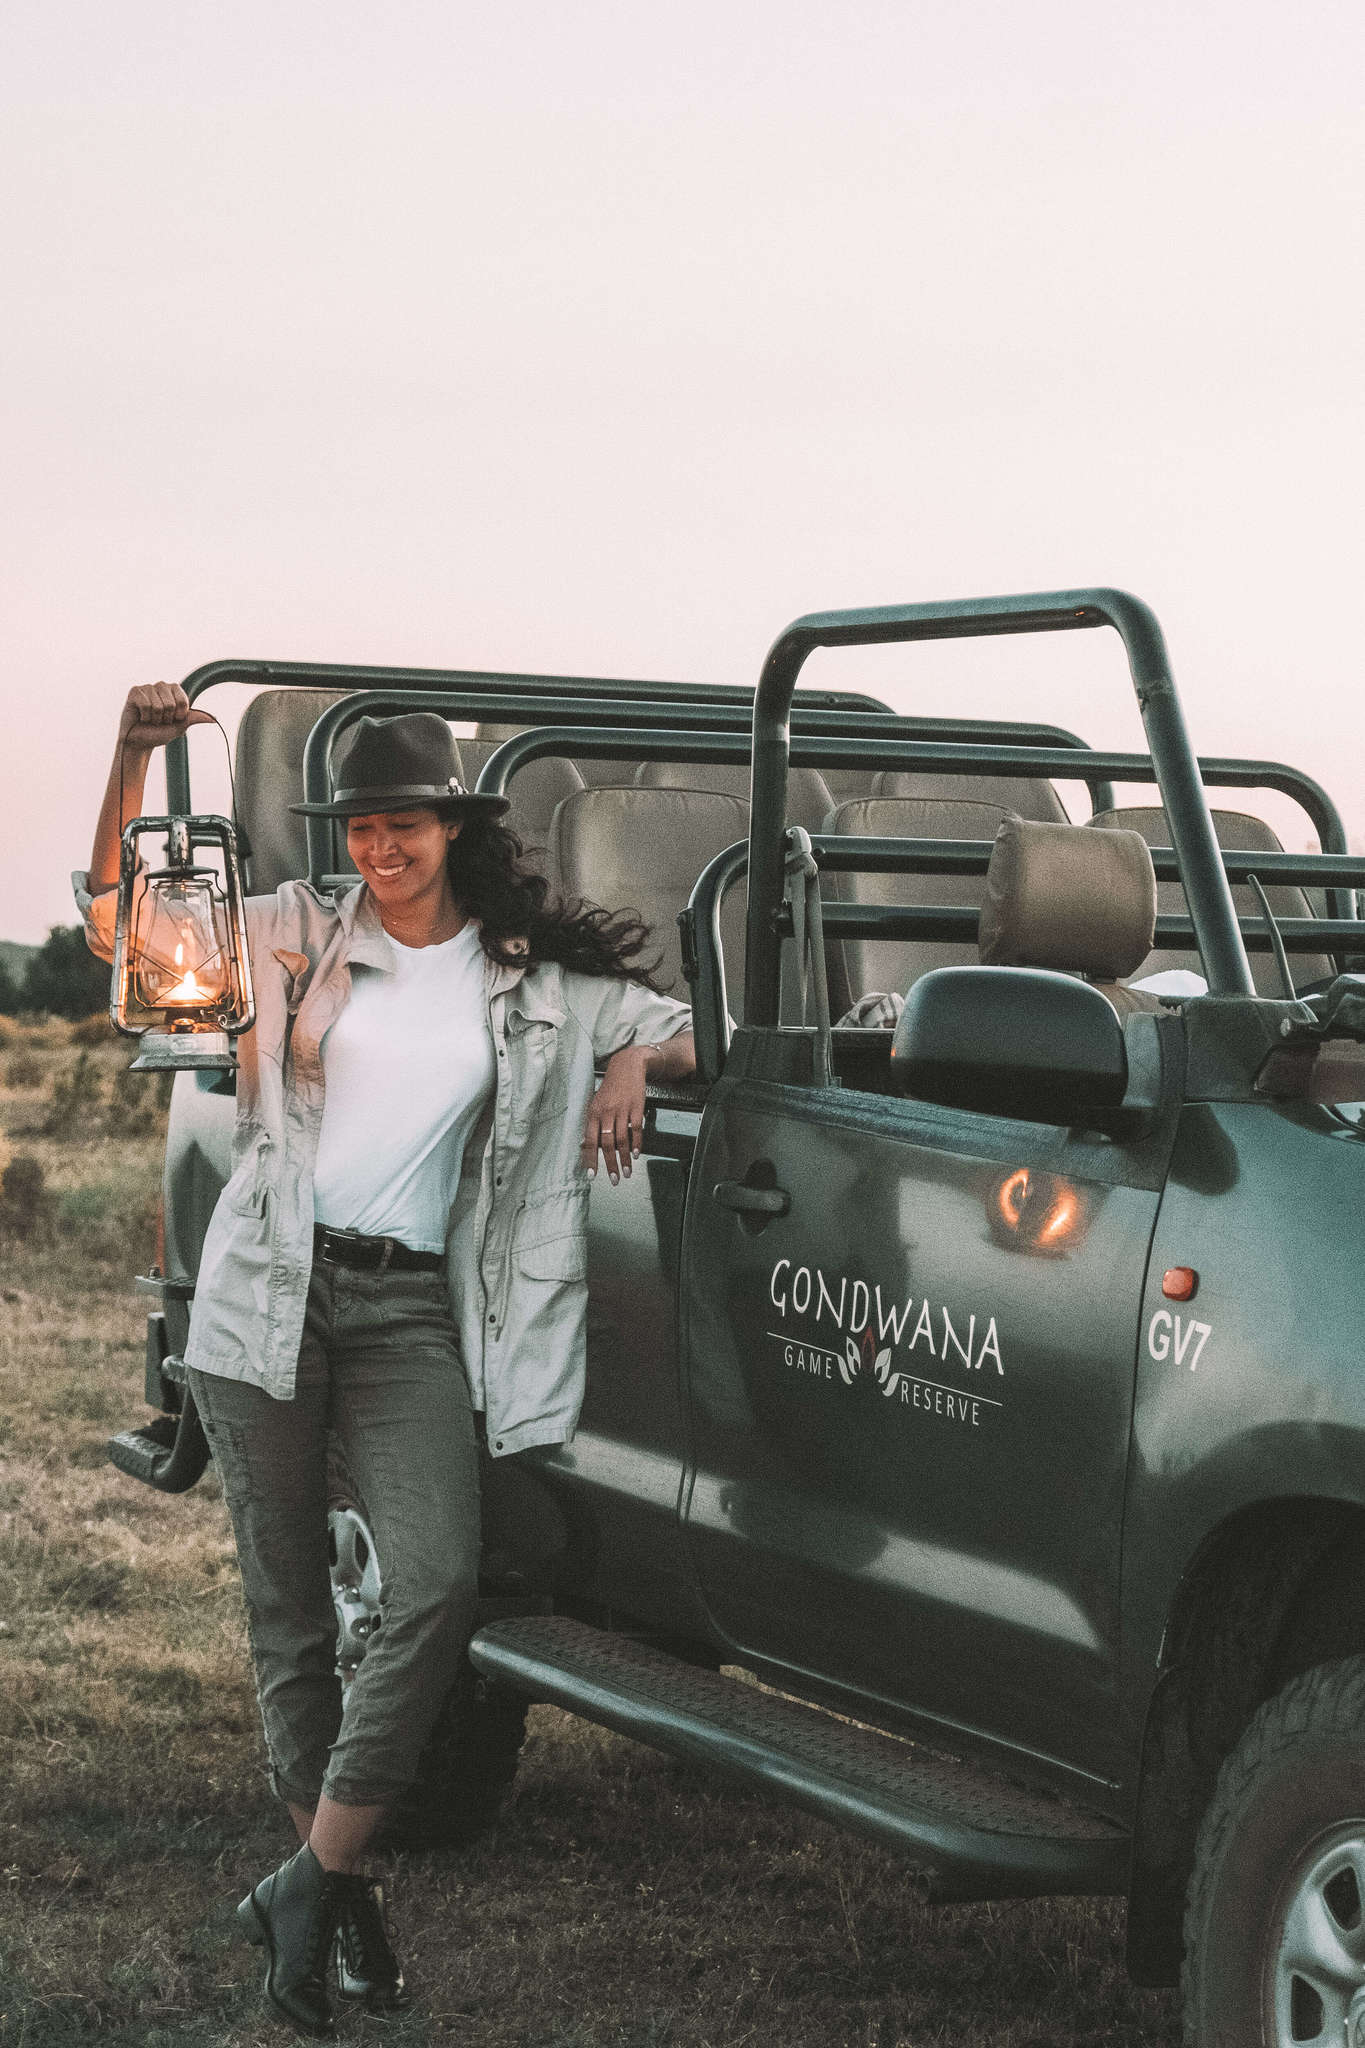 Girl on safari in South Africa